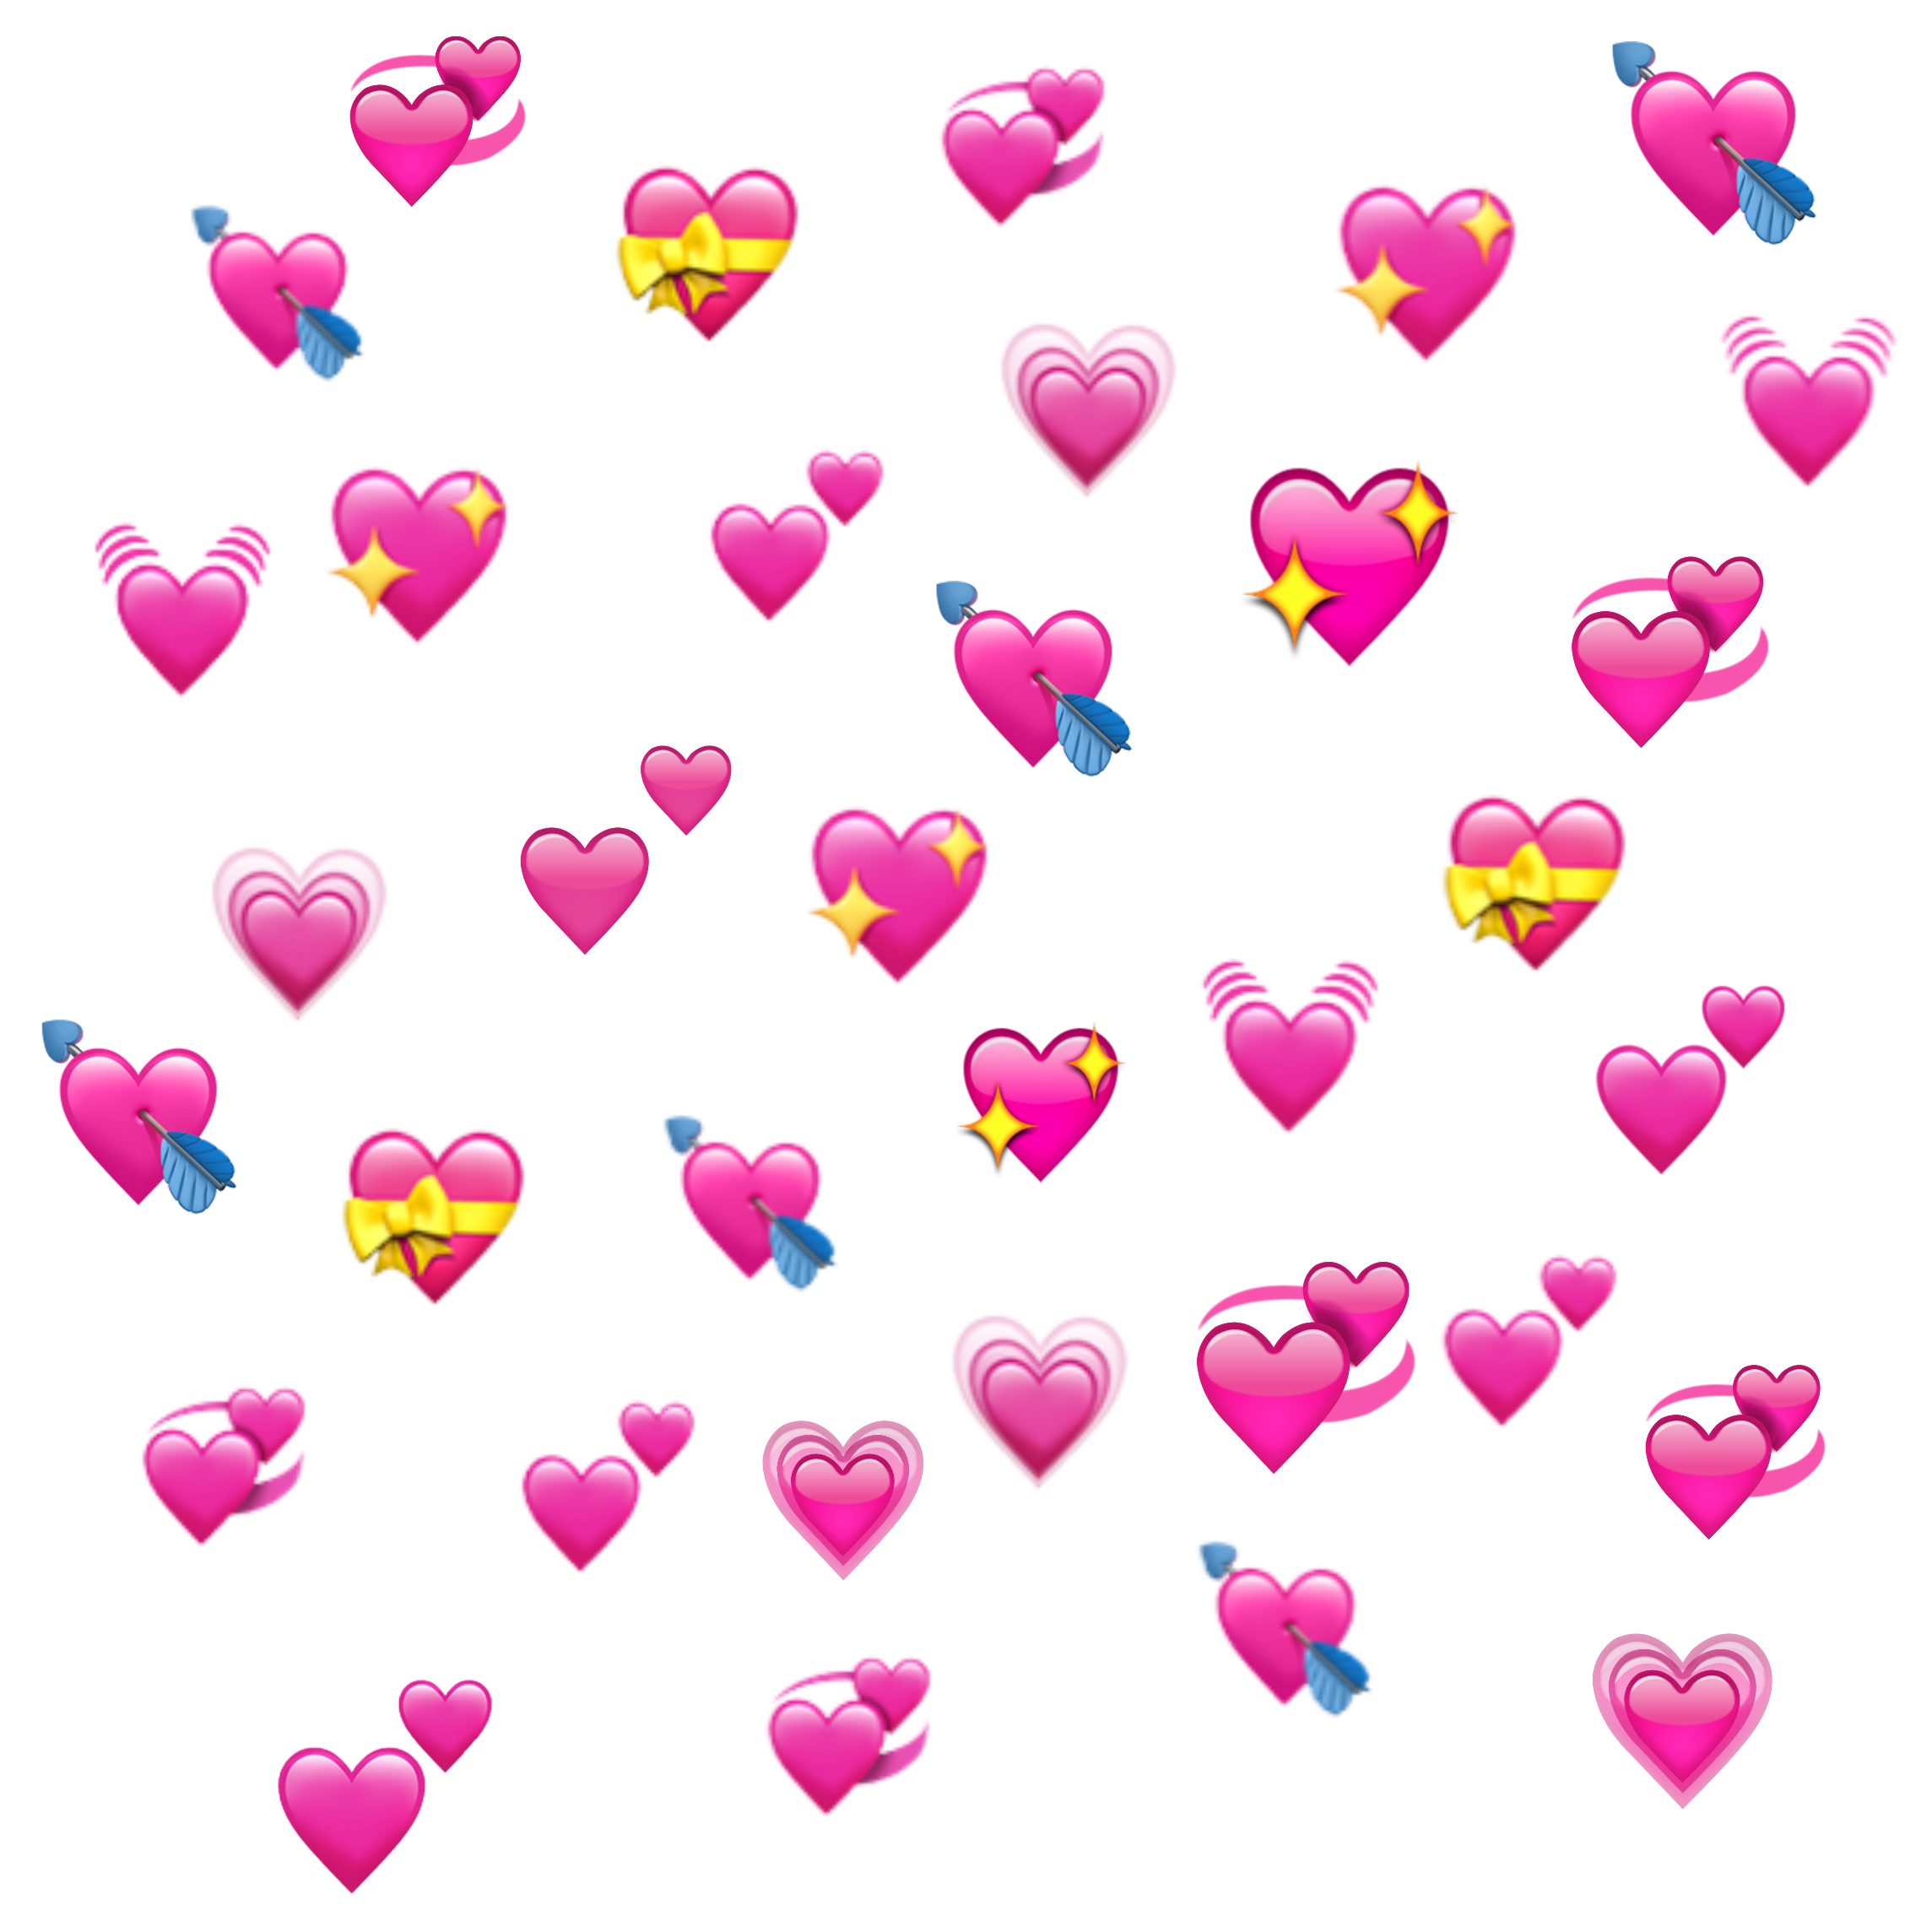 hearts heart emoji emojis heartemoji edit edits... - Anime Heart Emoji